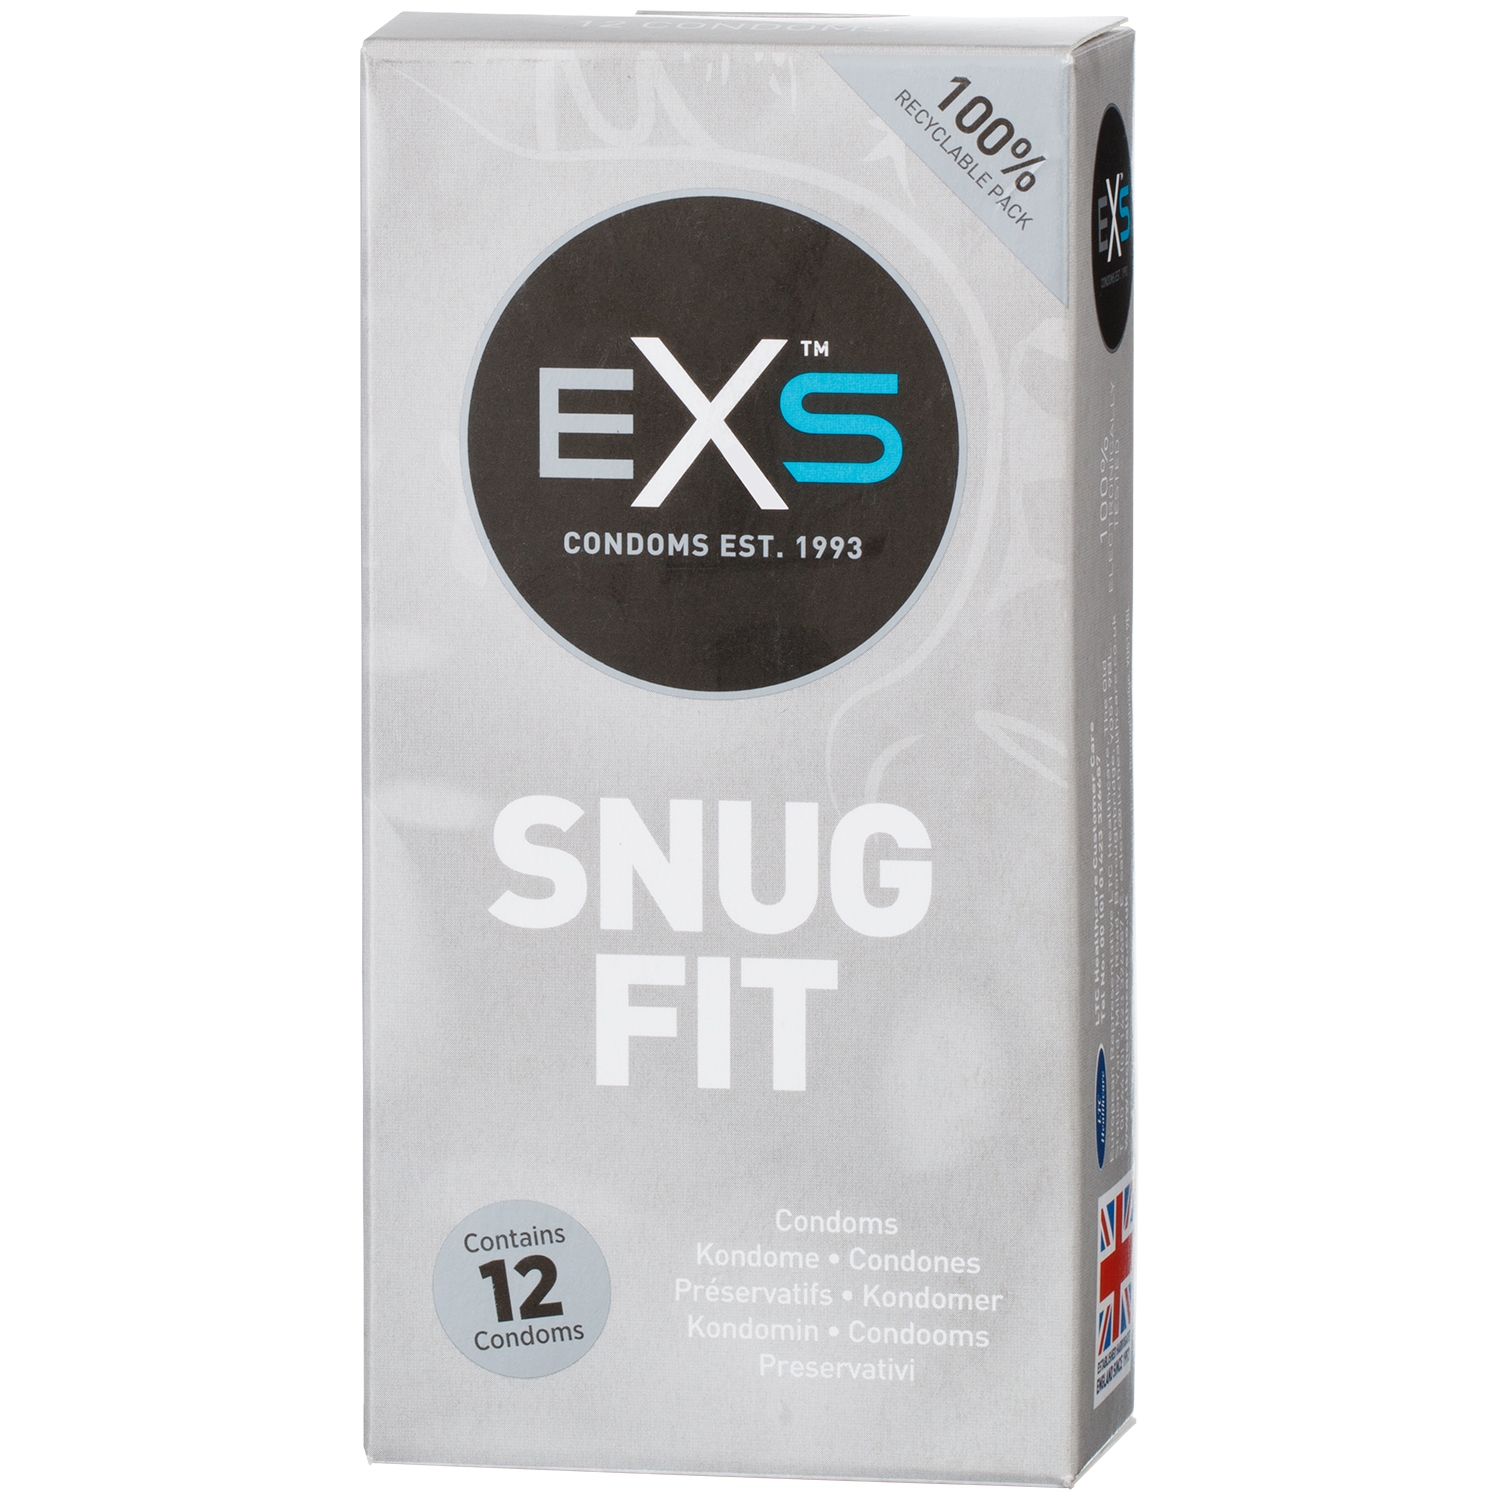 EXS Snug Fit Kondomer 12 stk - Clear